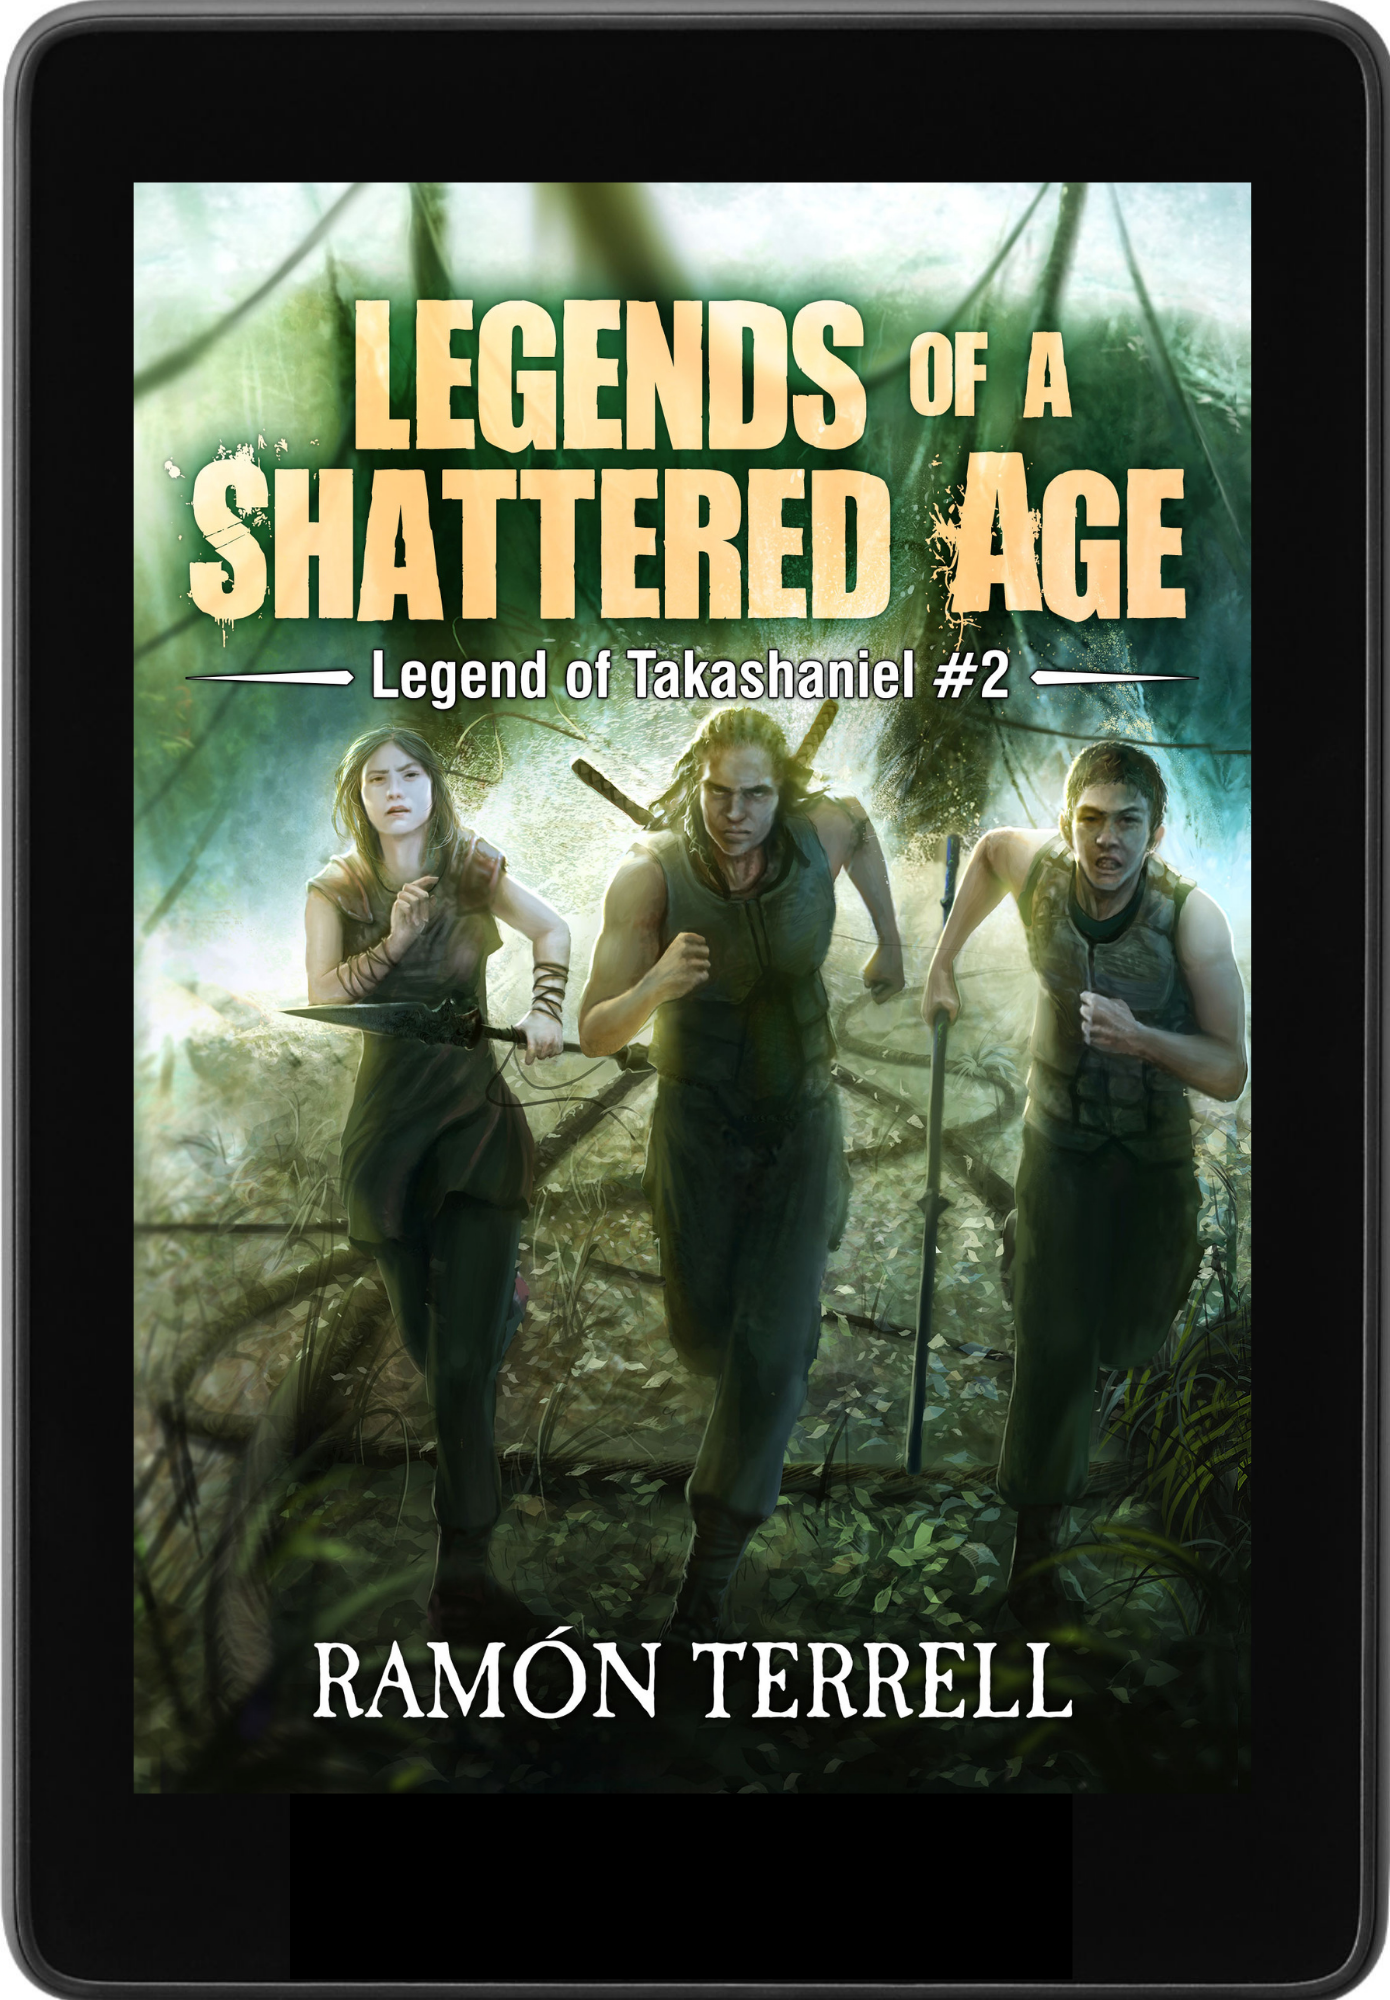 Legends of a Shattered Age: Legend of Takashaniel #2